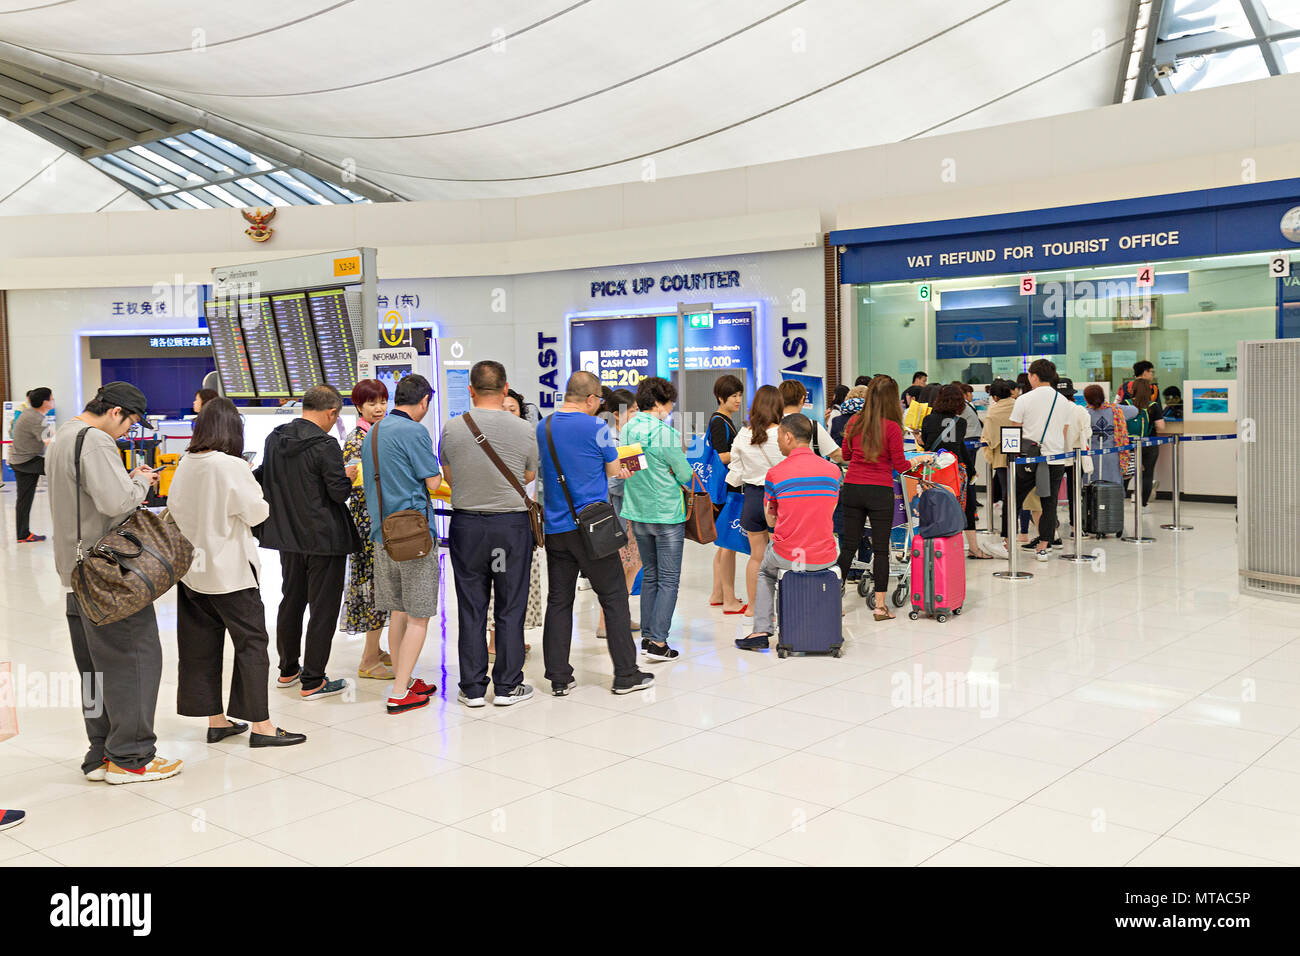 Les gens de la file d'attente à l'office de tourisme de remboursement de TVA à l'aéroport, Bangkok, Thaïlande Banque D'Images